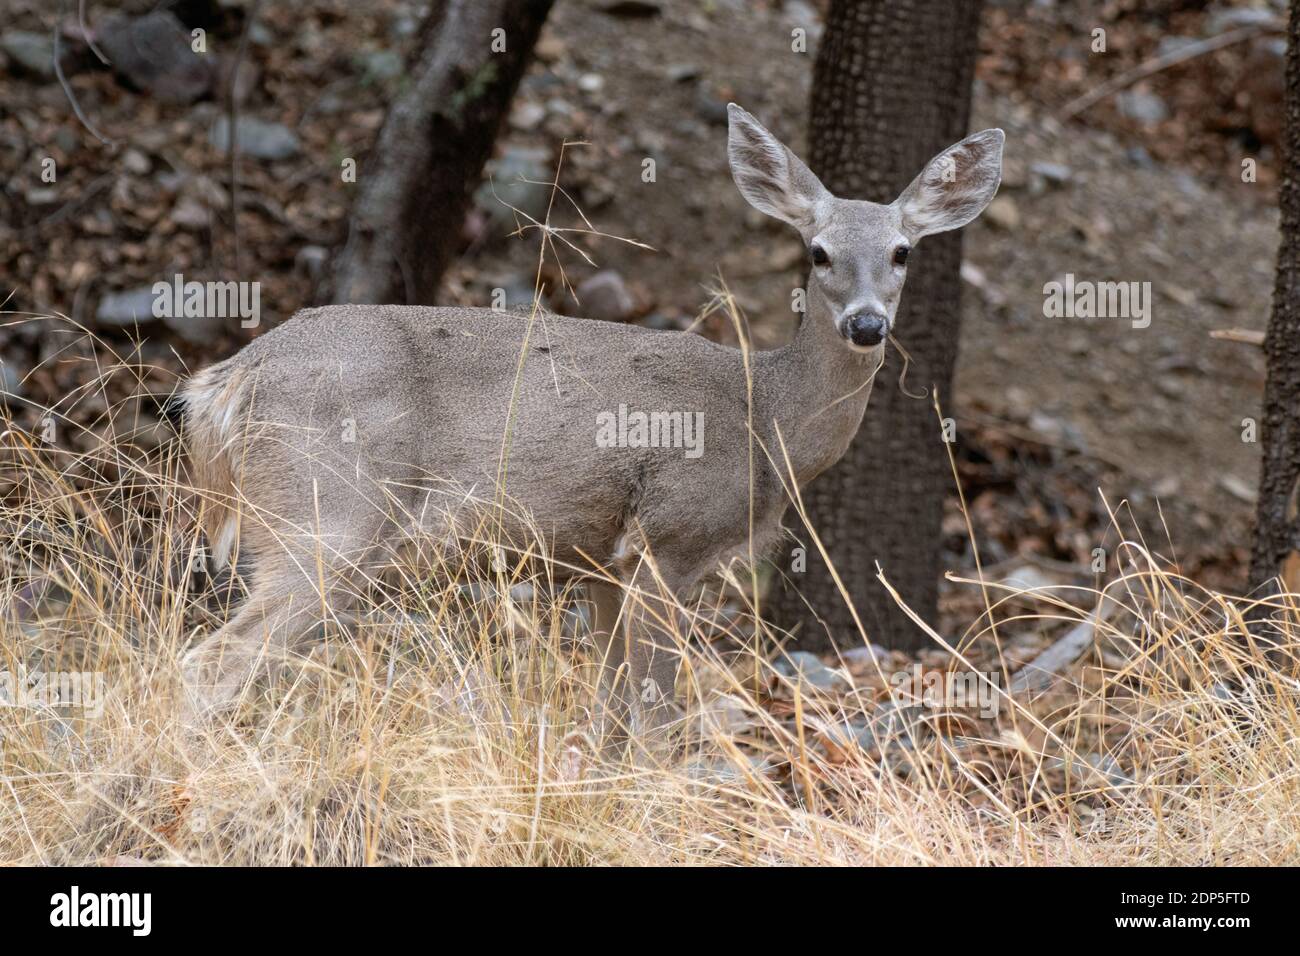 White-tailed Deer (Odocoileus virginianus) Stock Photo